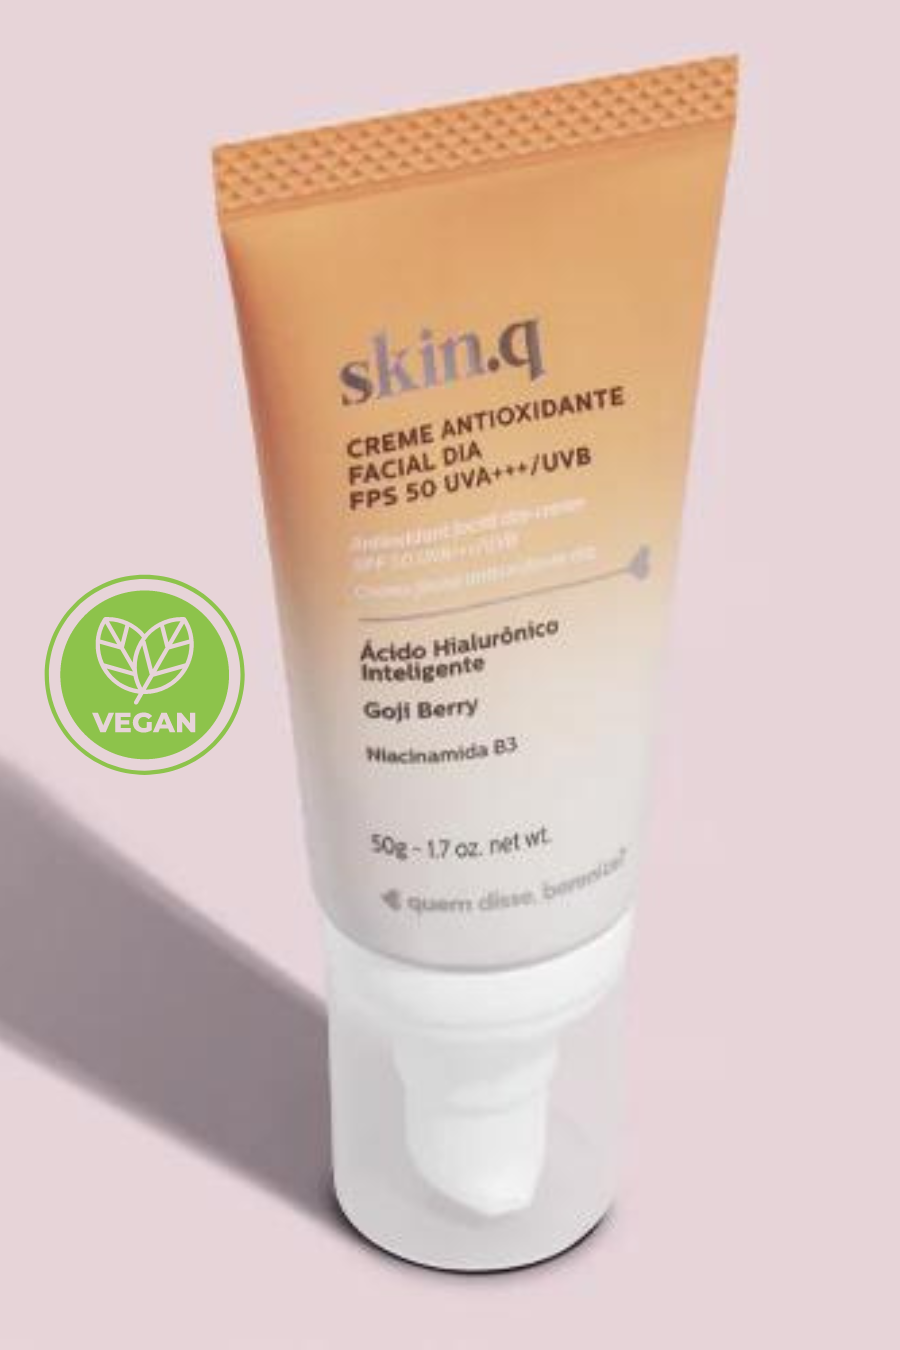 Skin.q Antioxidant facial day cream SPF 50 U.V.A *** /U.V.B - (Vegan) 50 g.